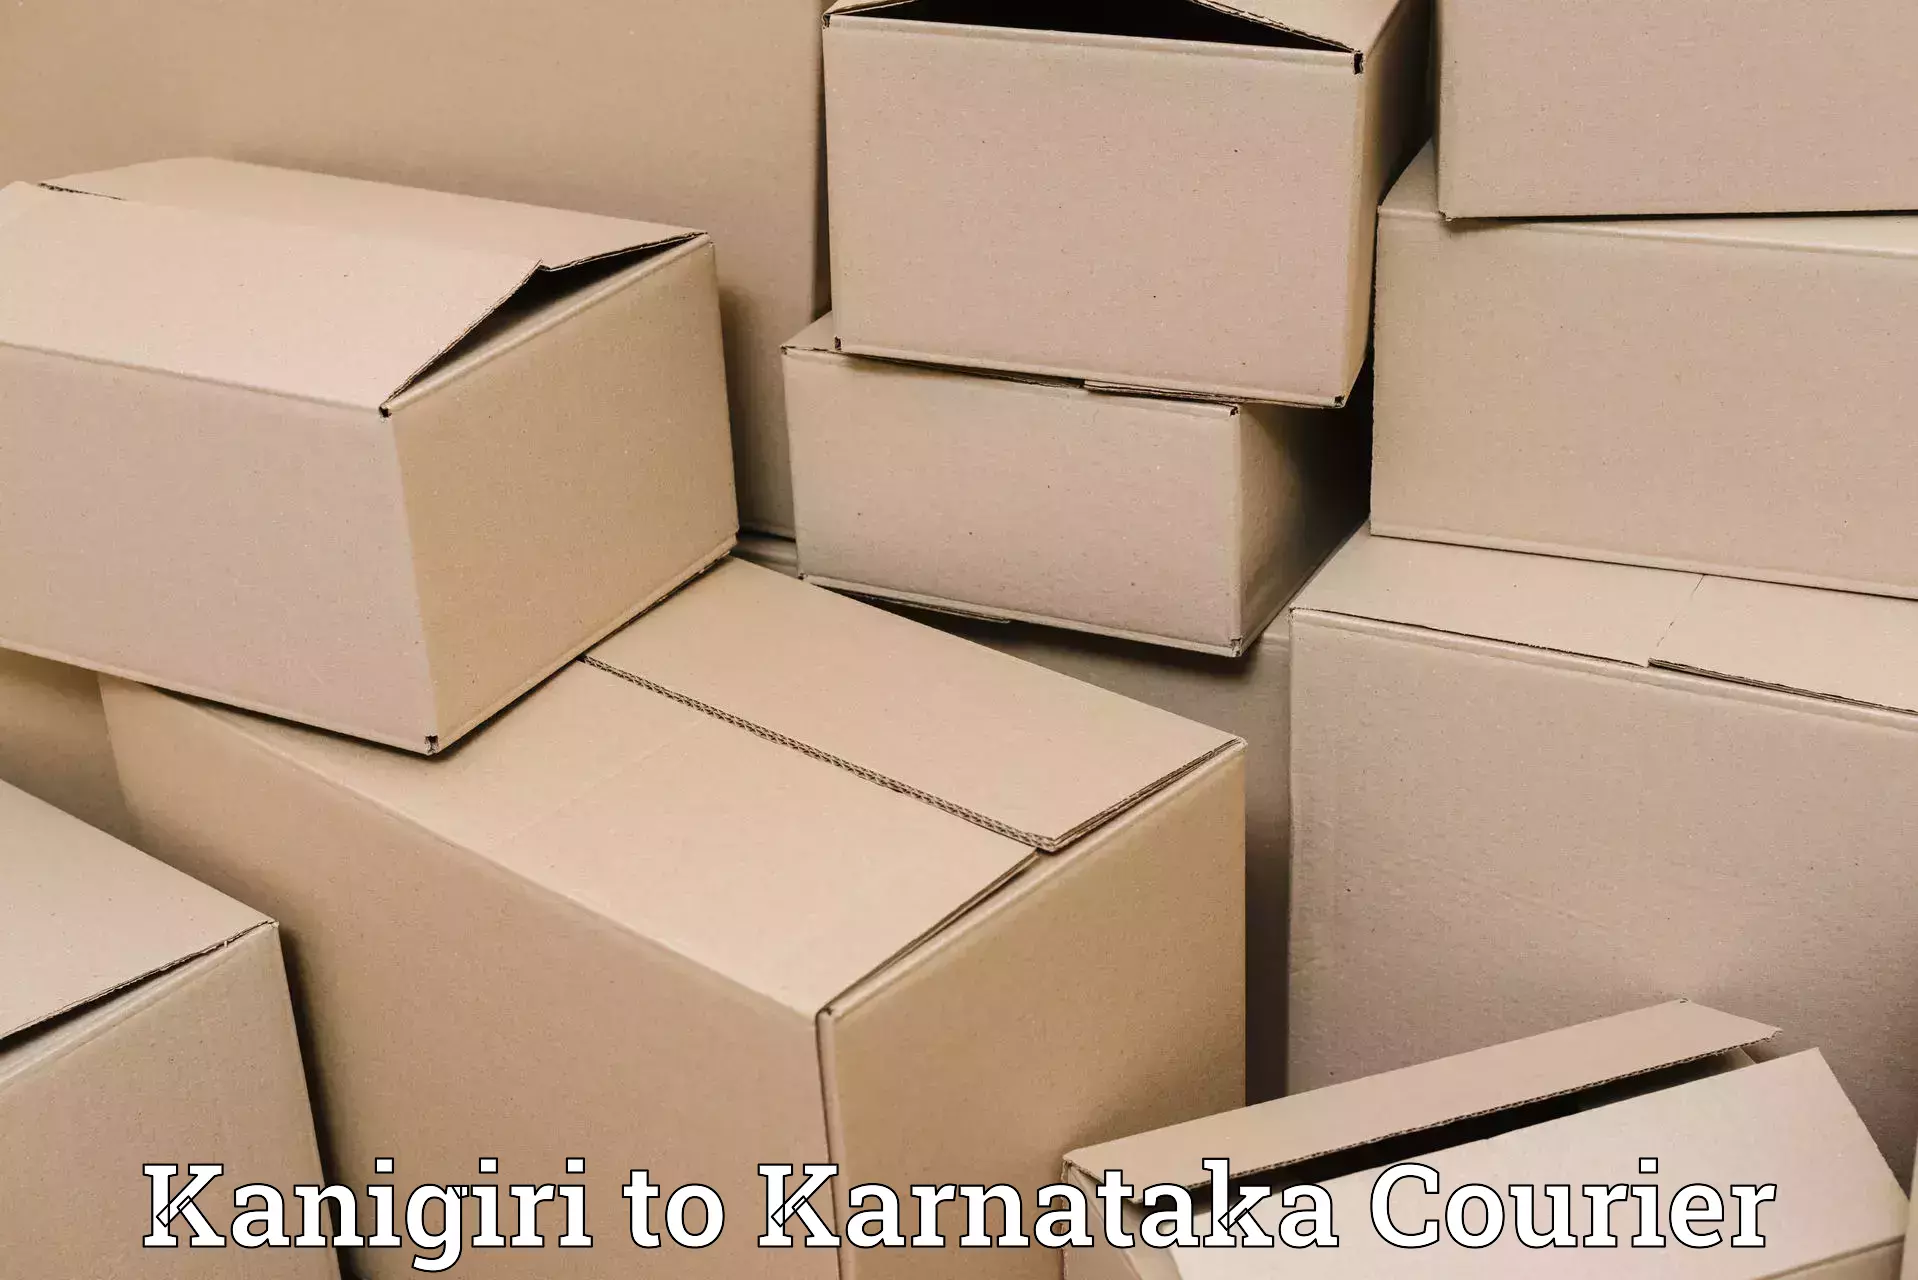 Next-day freight services Kanigiri to Kalaburagi